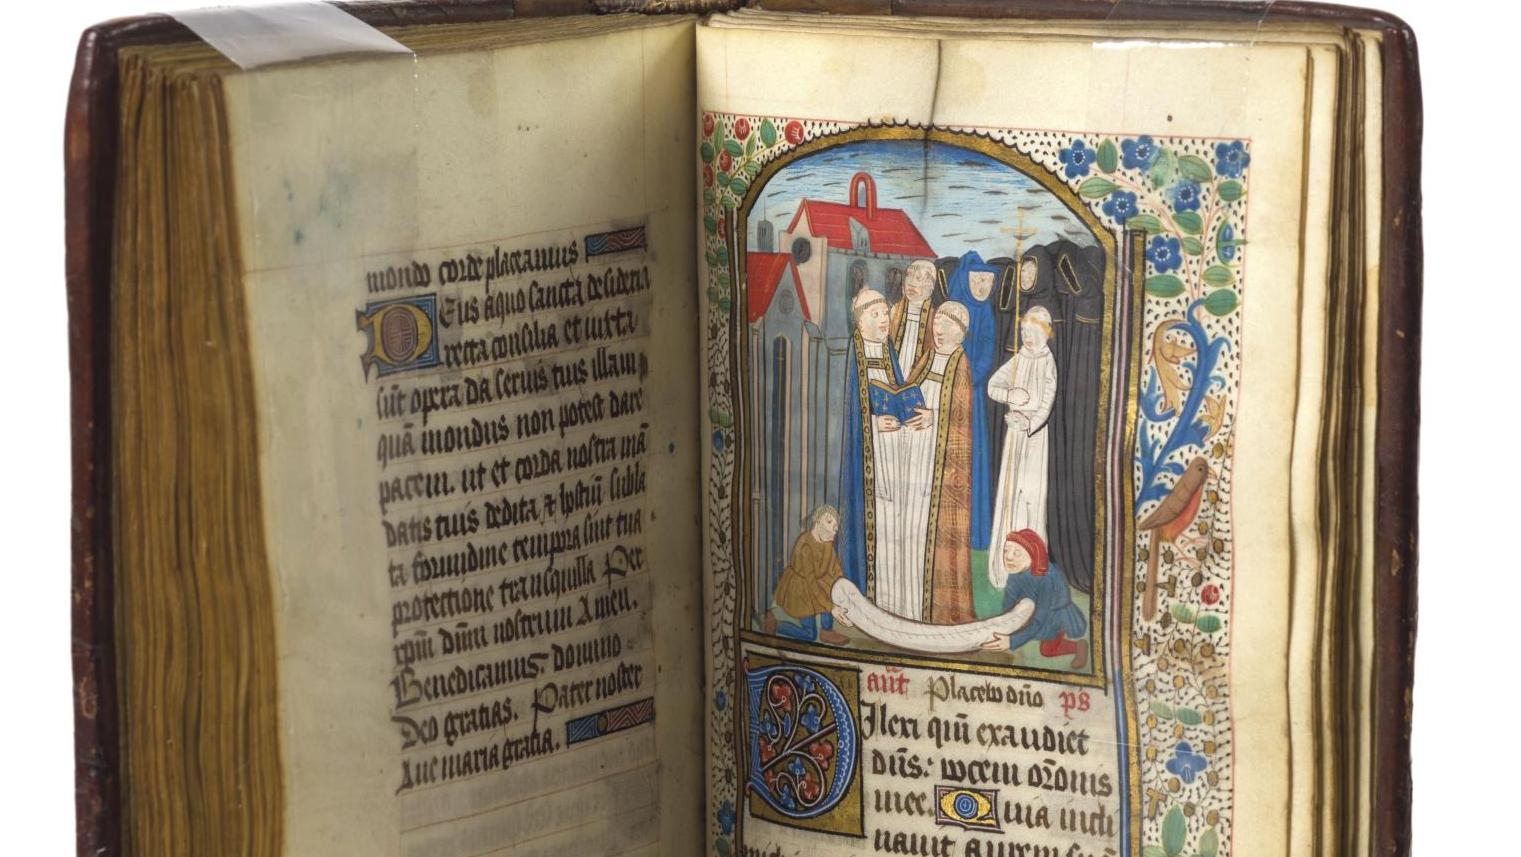 Rouen, vers 1470. Livre d’heures à l’usage de Bayeux, 188 x 128 mm, reliure XVIIe... De Rouen à Bayeux, enluminures normandes